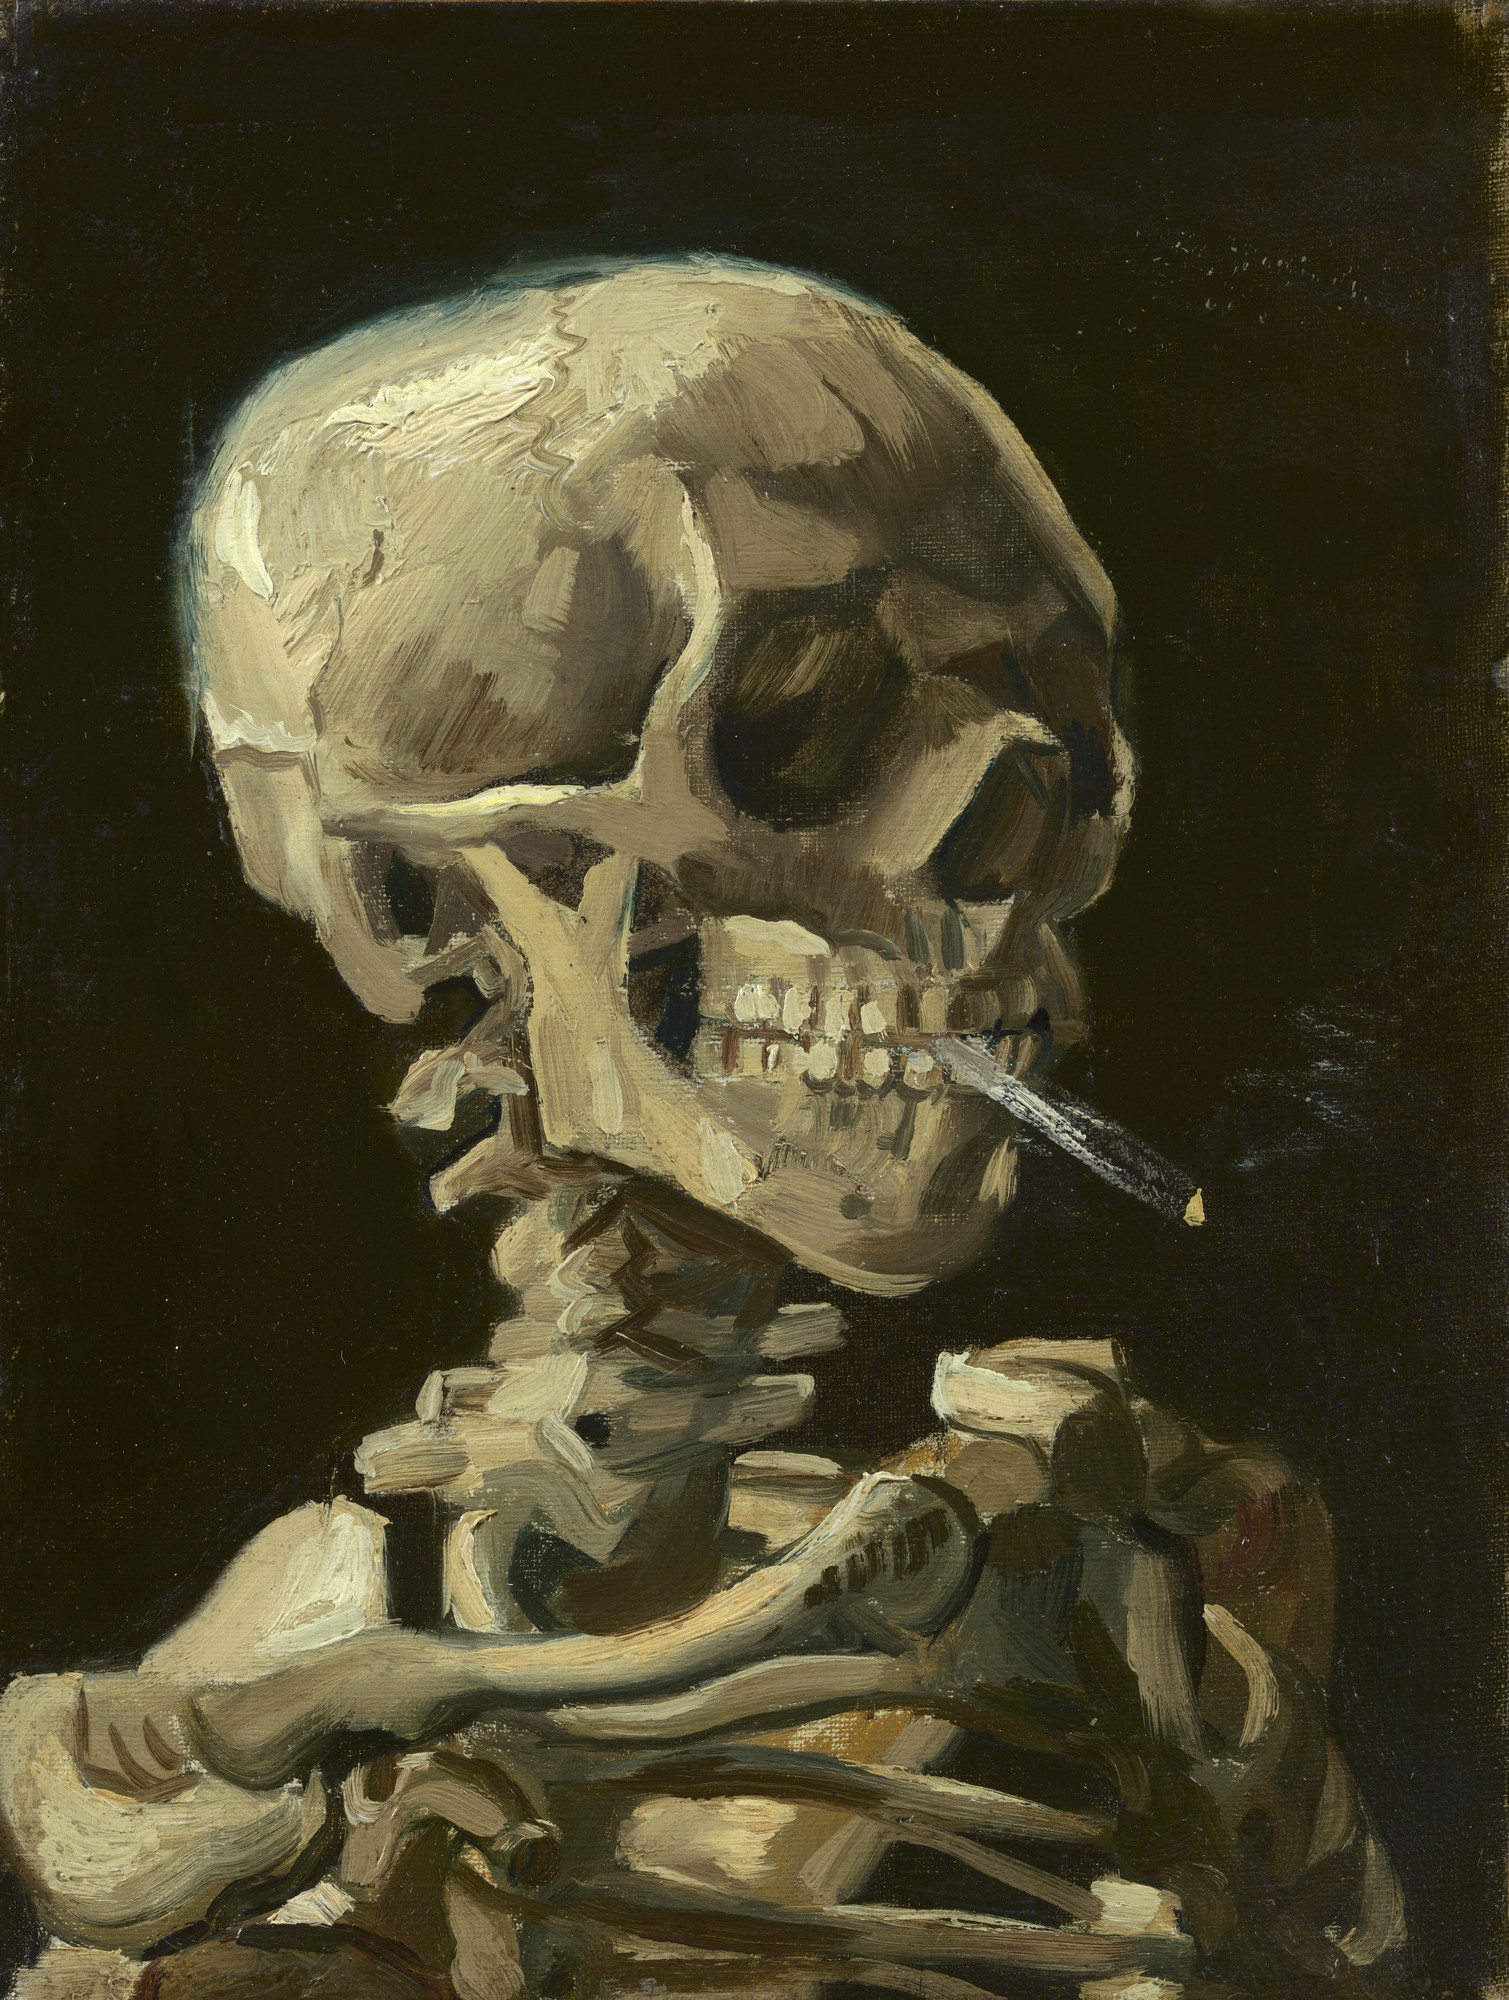 《叼烟的骷髅》美术画作介绍